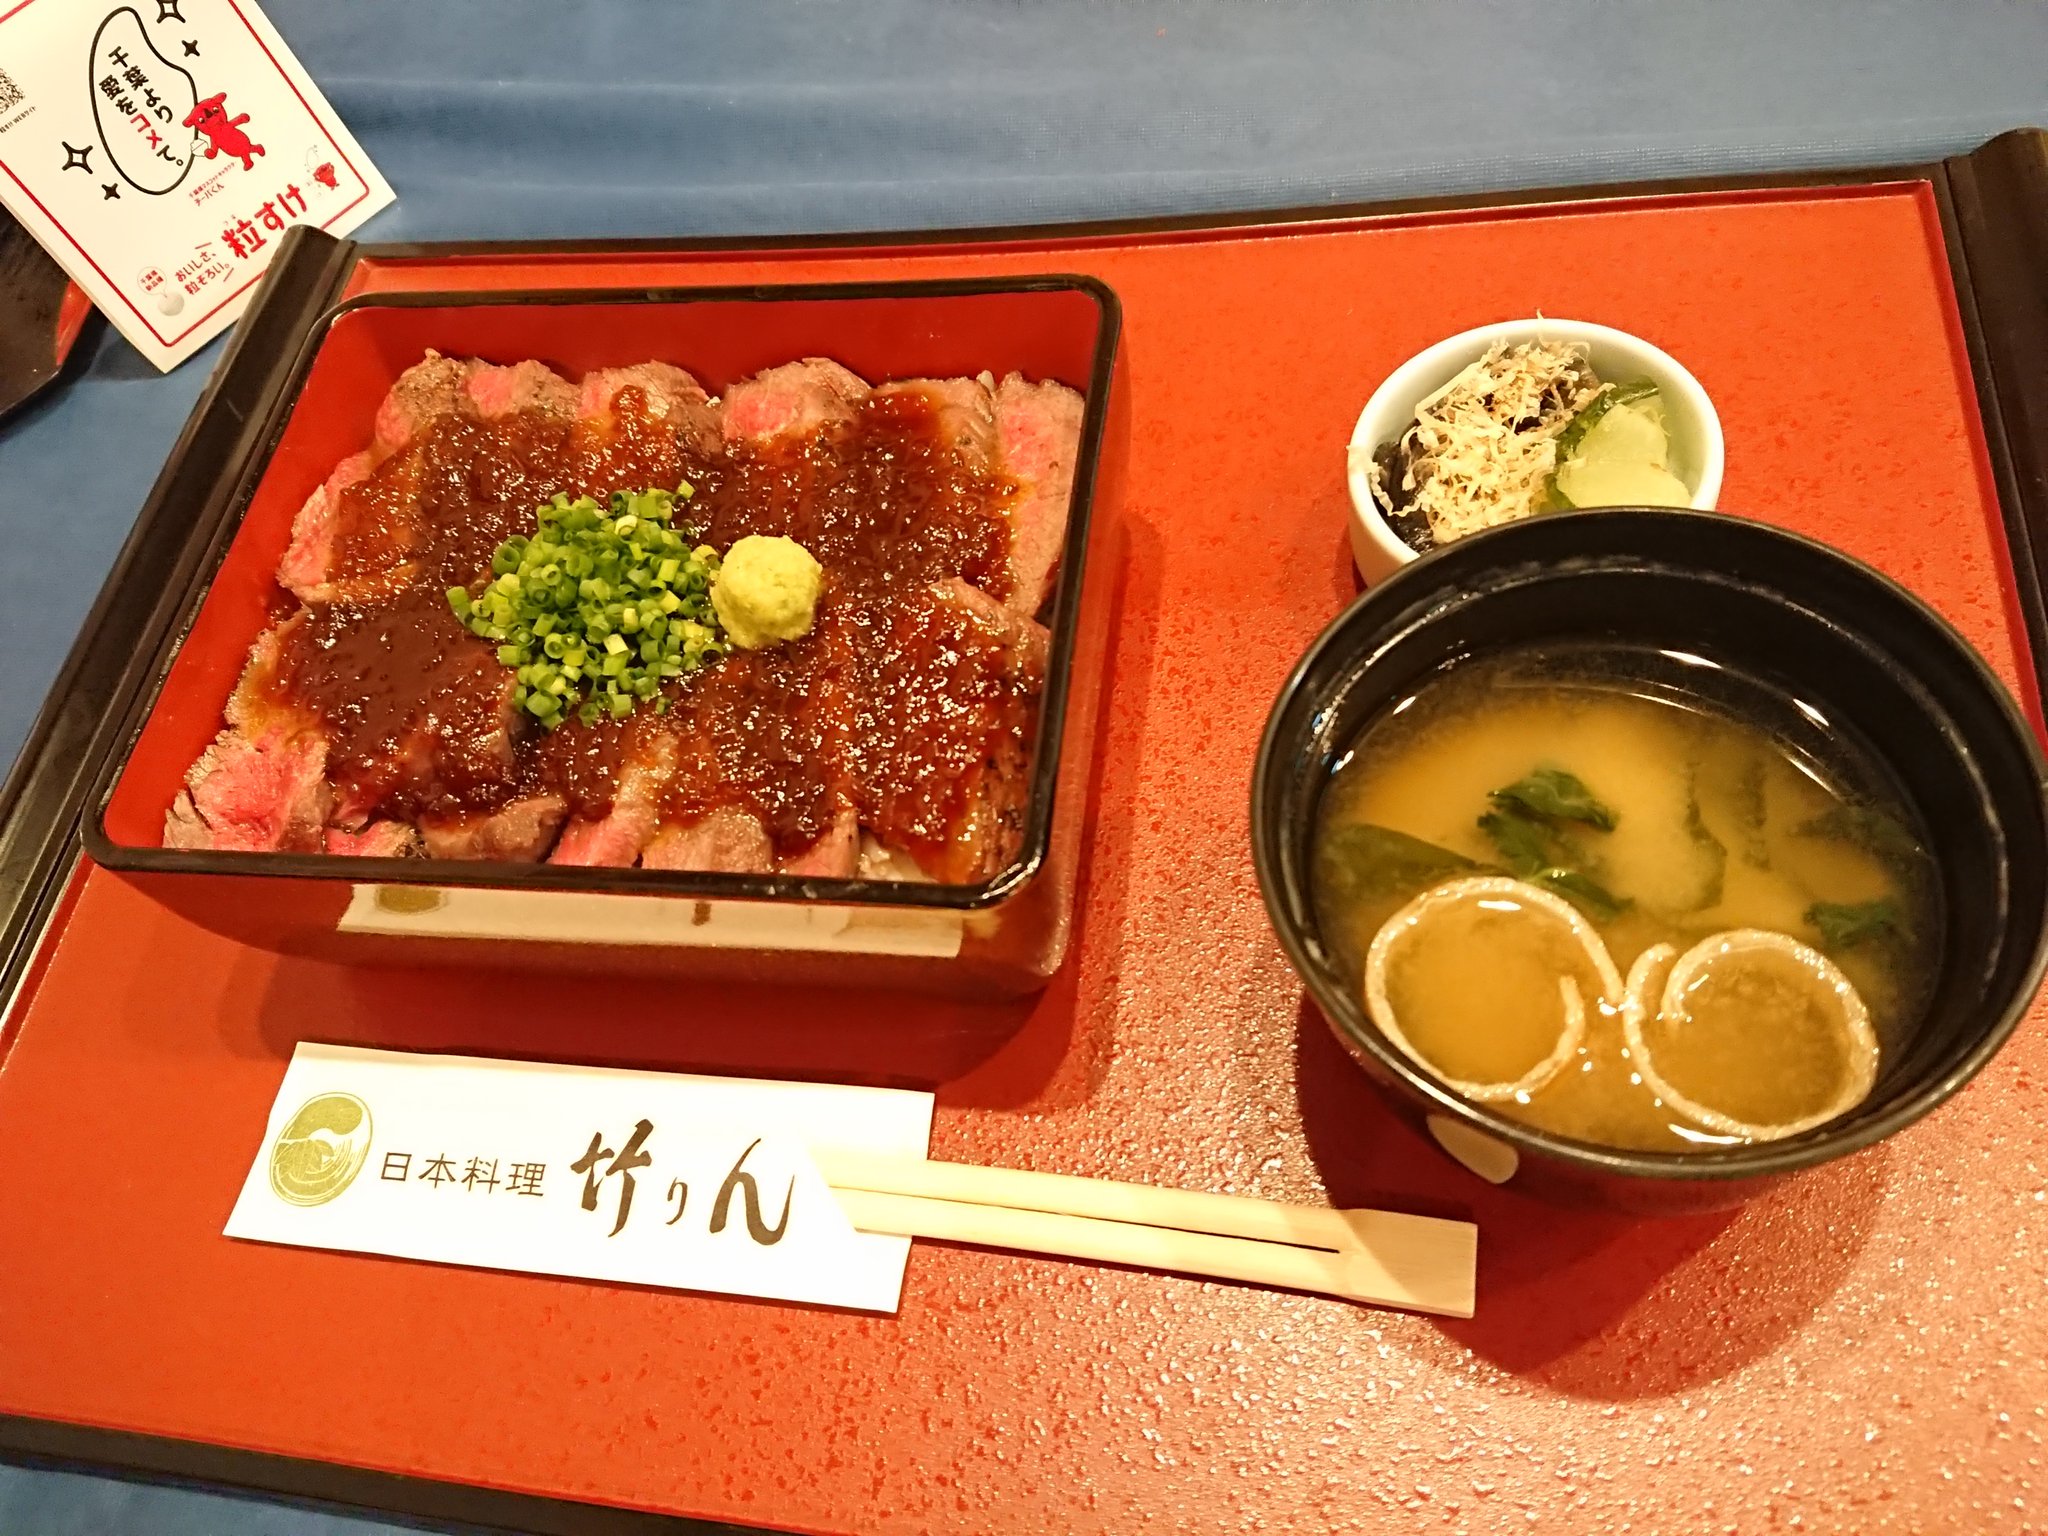 茂原市「日本料理 竹りん」の「粒すけ」に合うメニューが紹介されました!【bayfm「シン•ラジオ-ヒューマニスタは､かく語りき-」】